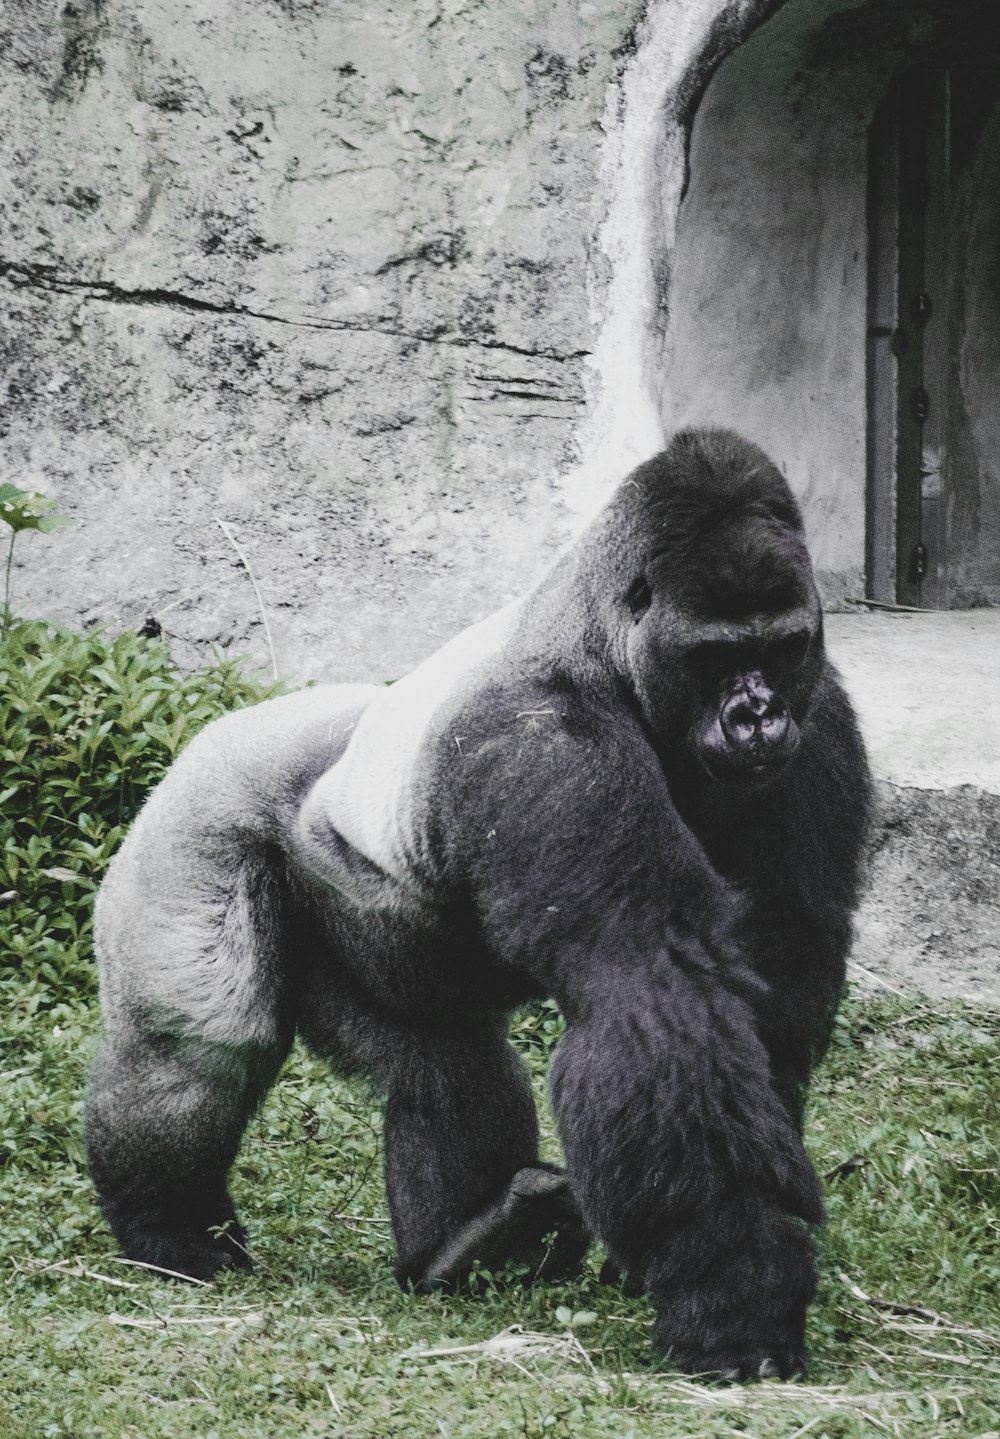 black gorilla sitting on ground